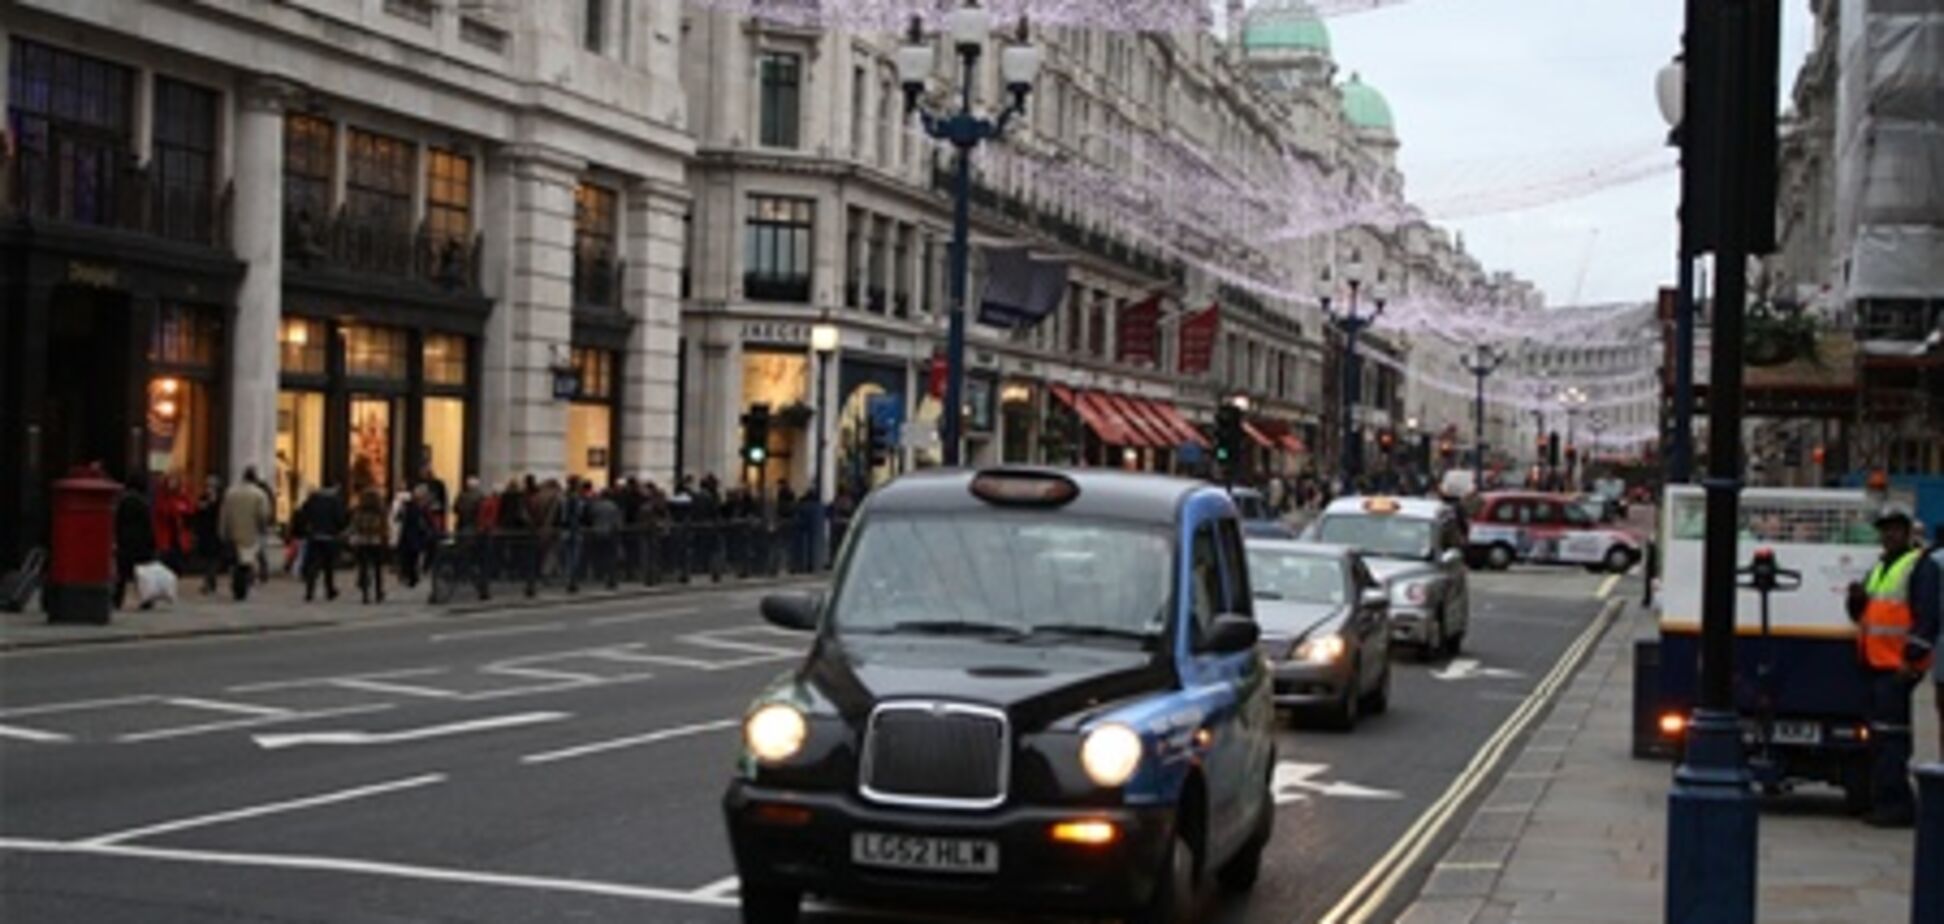 Бесплатный интернет появится в такси Лондона